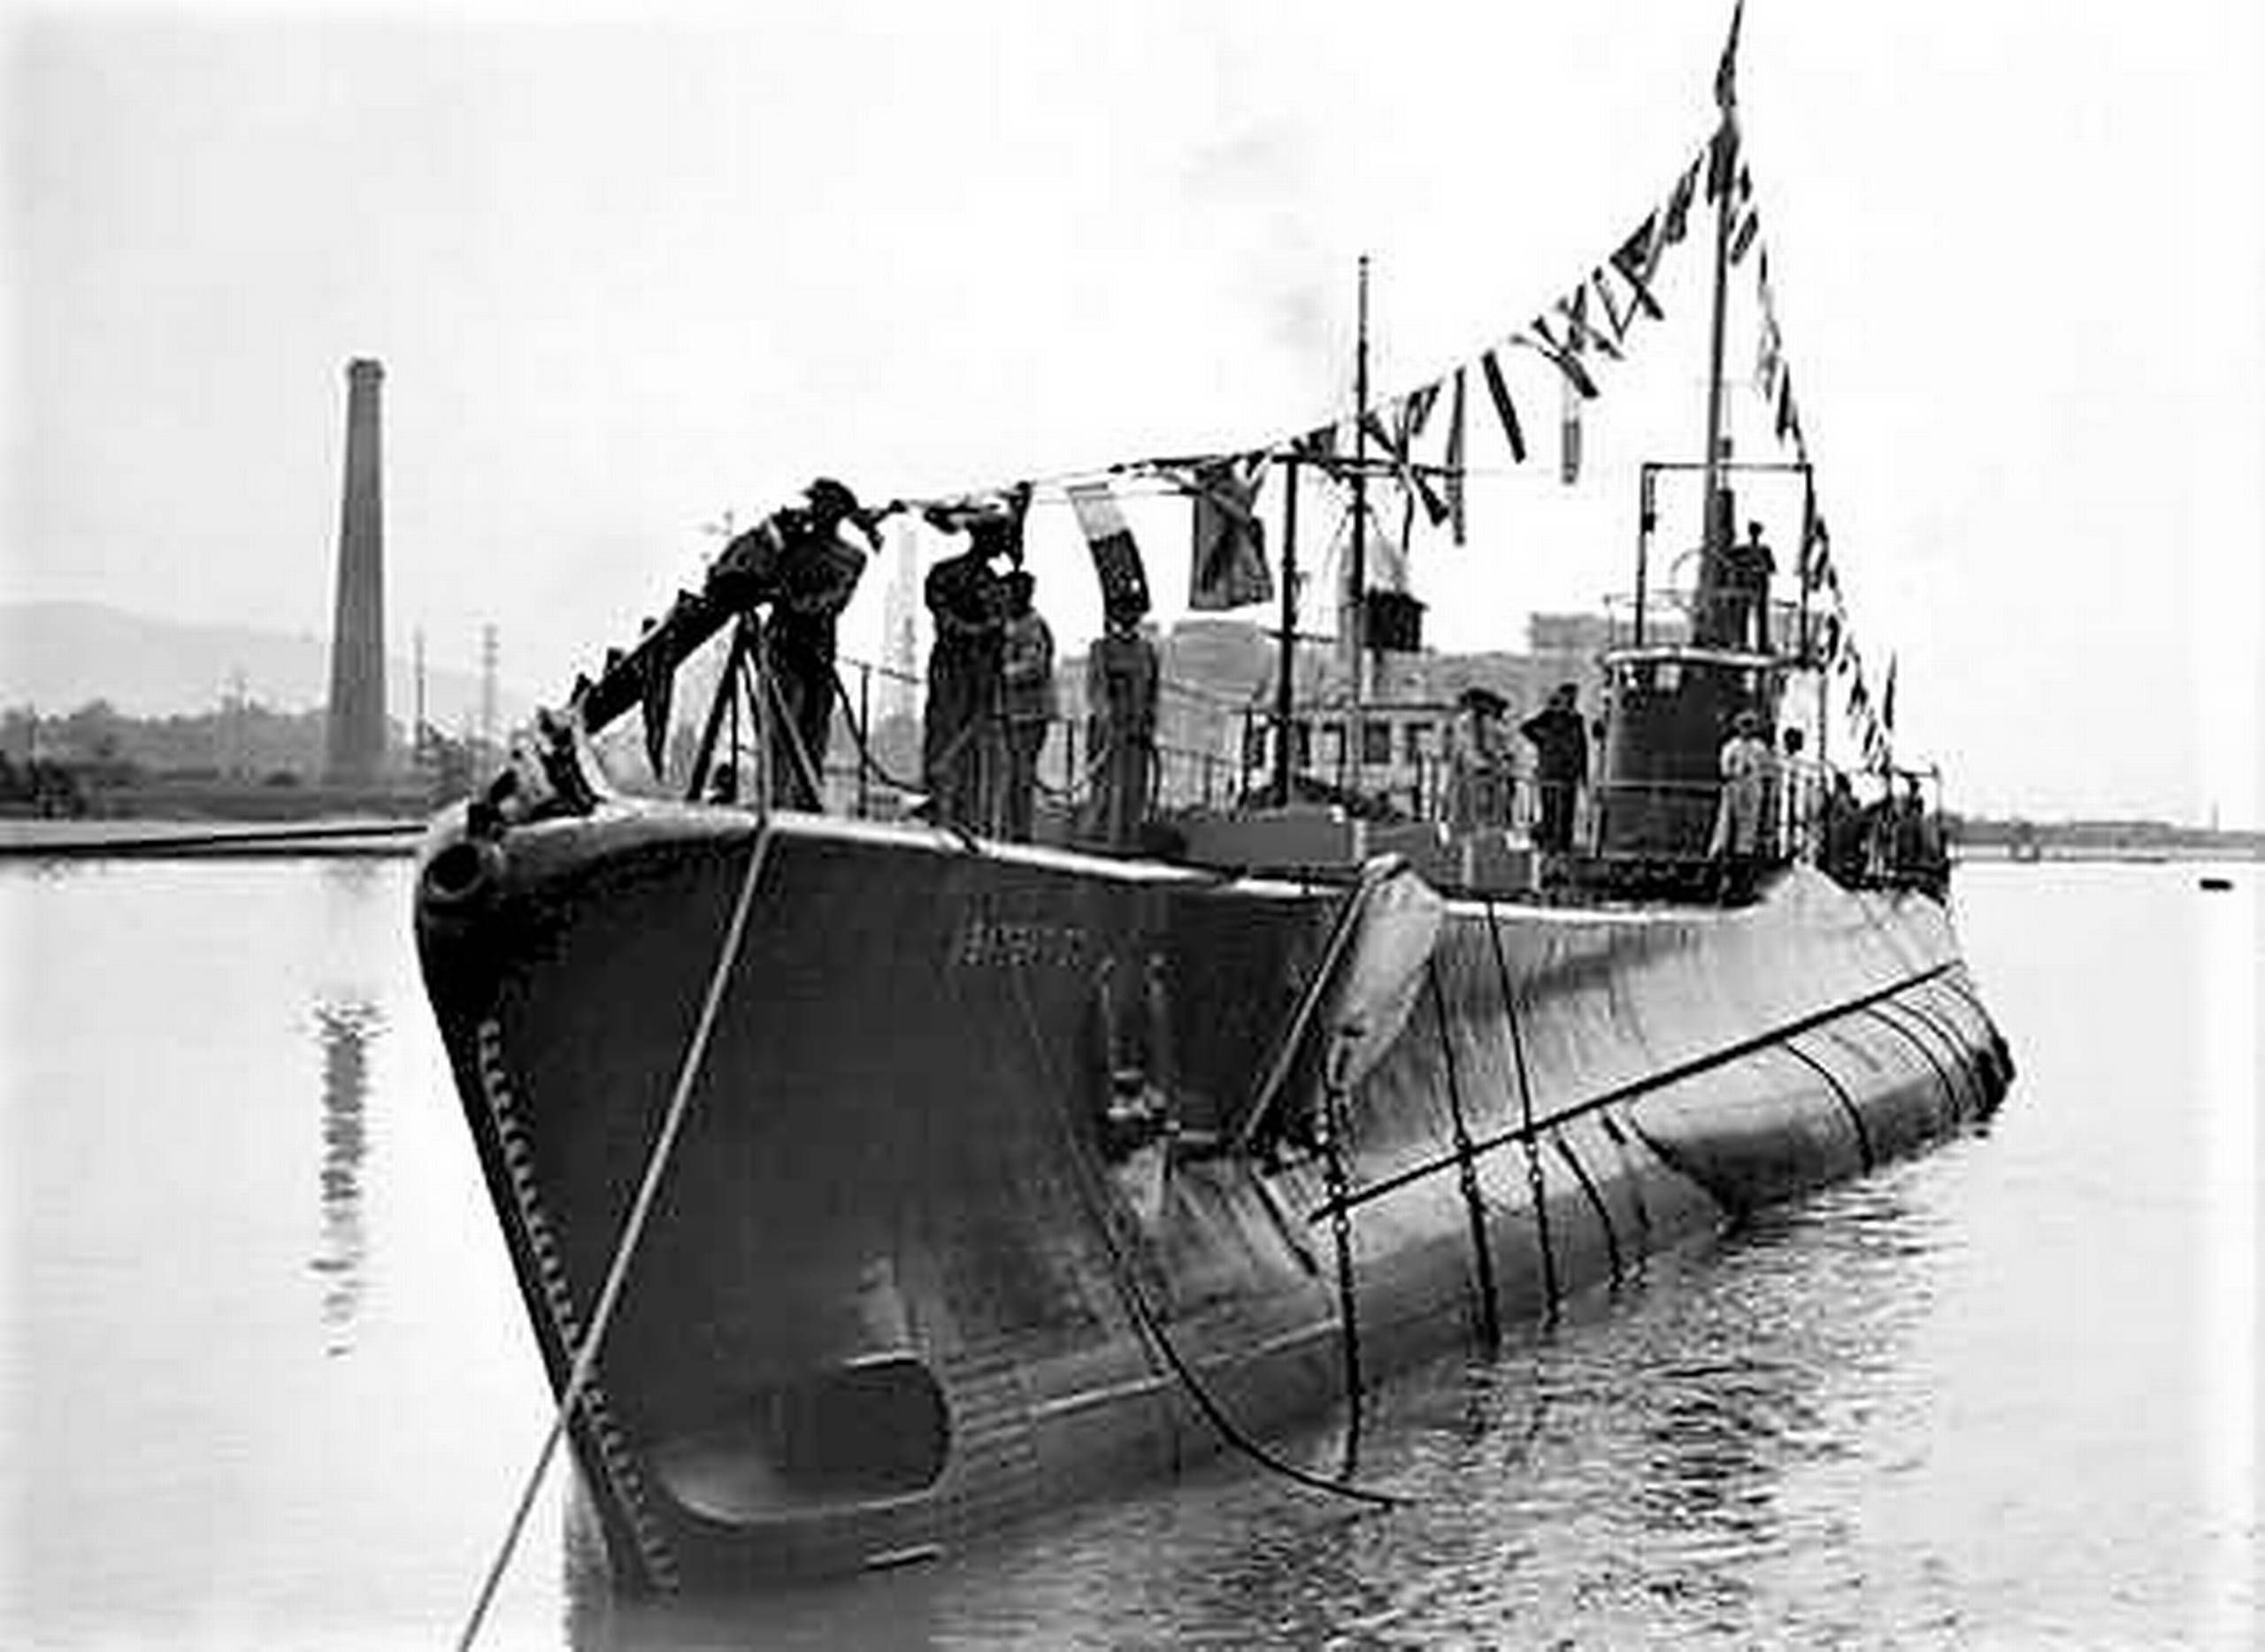 Slagskib sænket ubåd: Men det blev som rent fup fostret i ubådskaptajnens fantasi